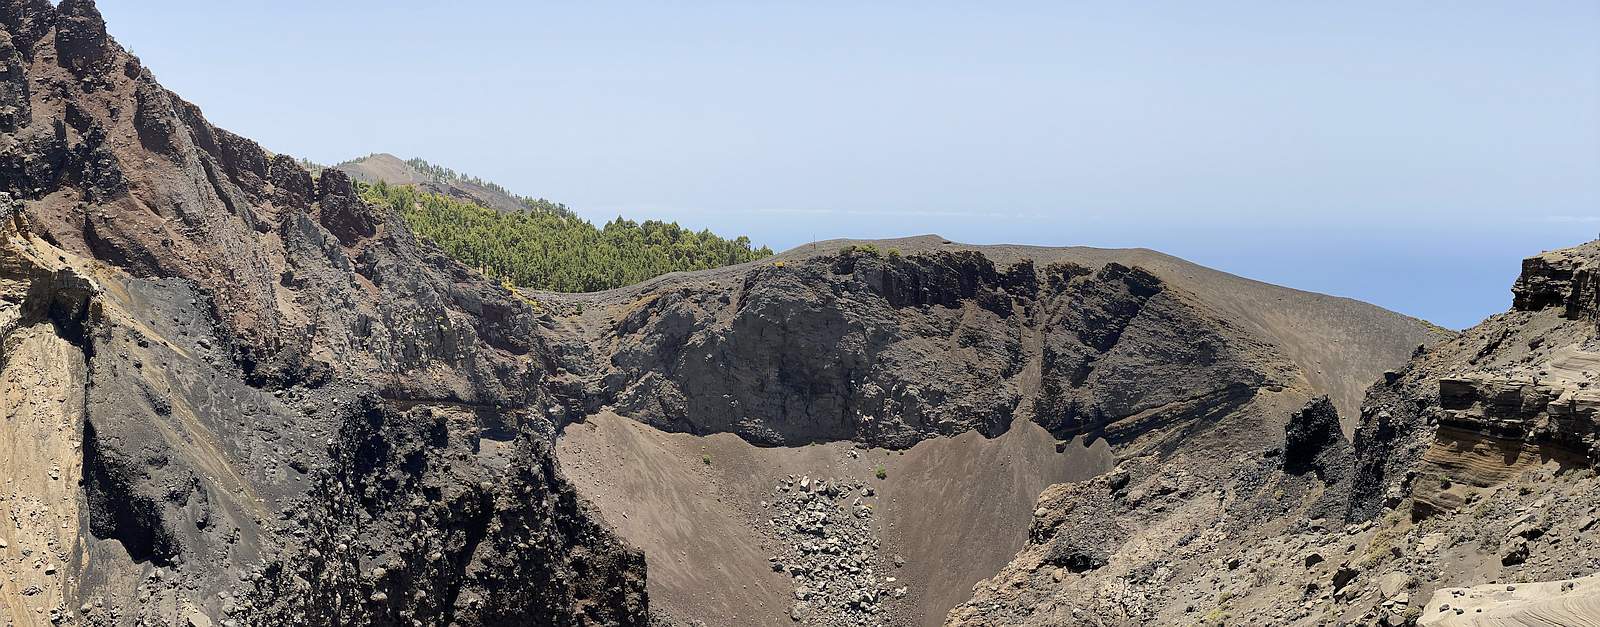 La Palma area affected volcano Cumbre Vieja crater